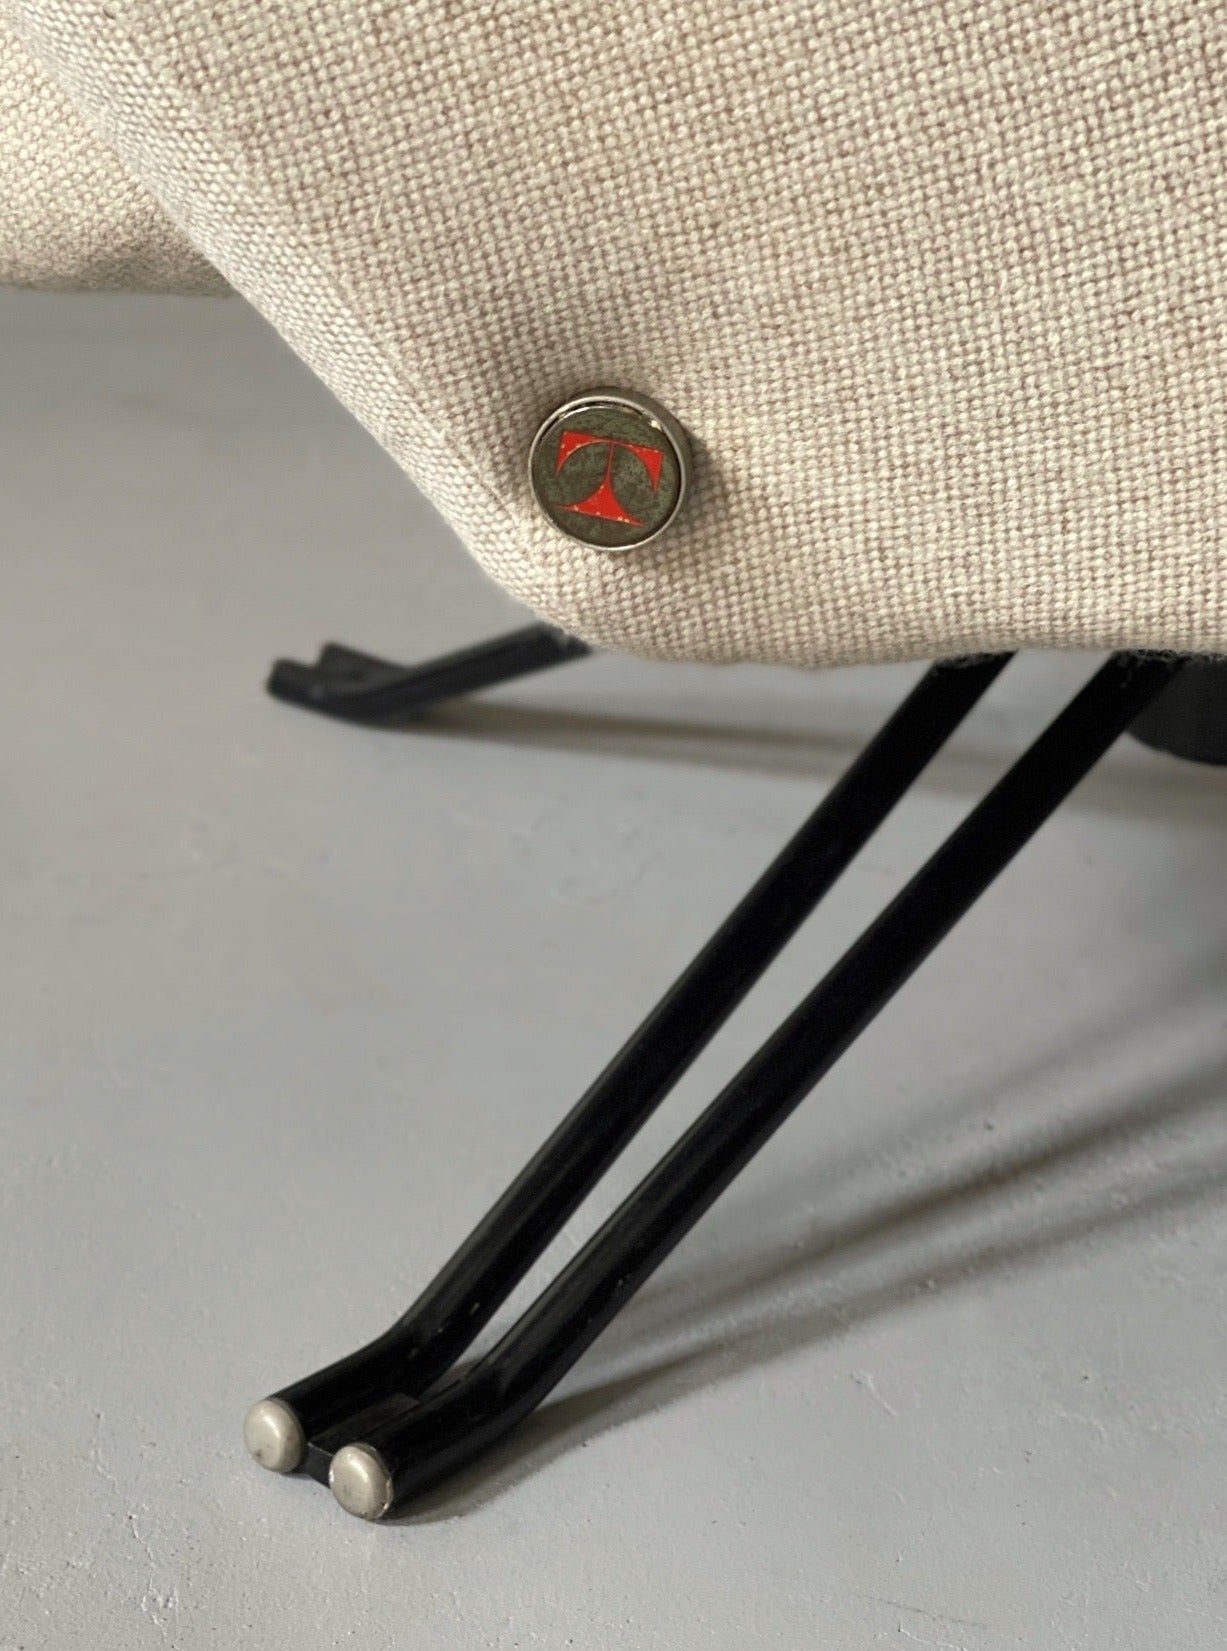 P32 Swivel Chair by Osvaldo Borsani for Tecno